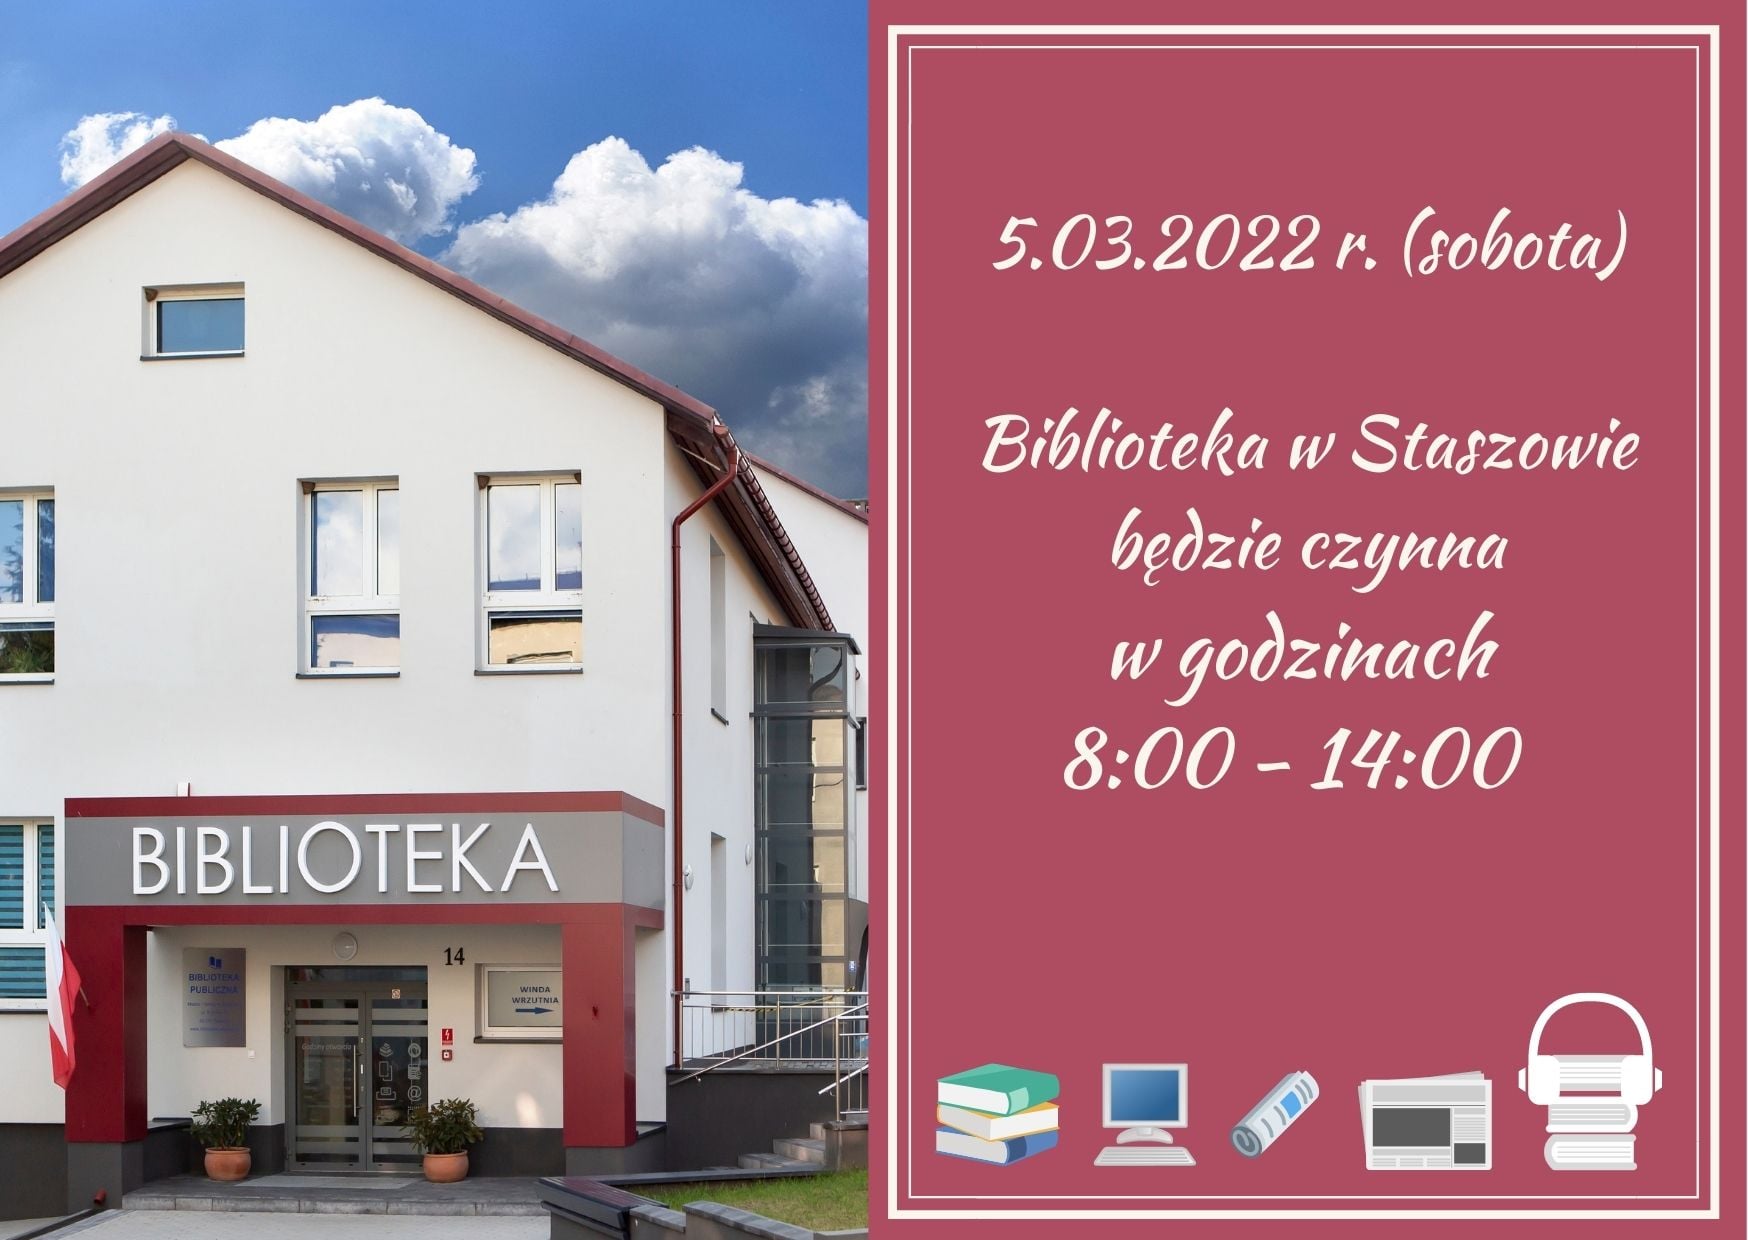 Grafika informacyjna: W sobotę, 5 marca Biblioteka w Staszowie będzie czynna w godzinach: 8:00-14:00.